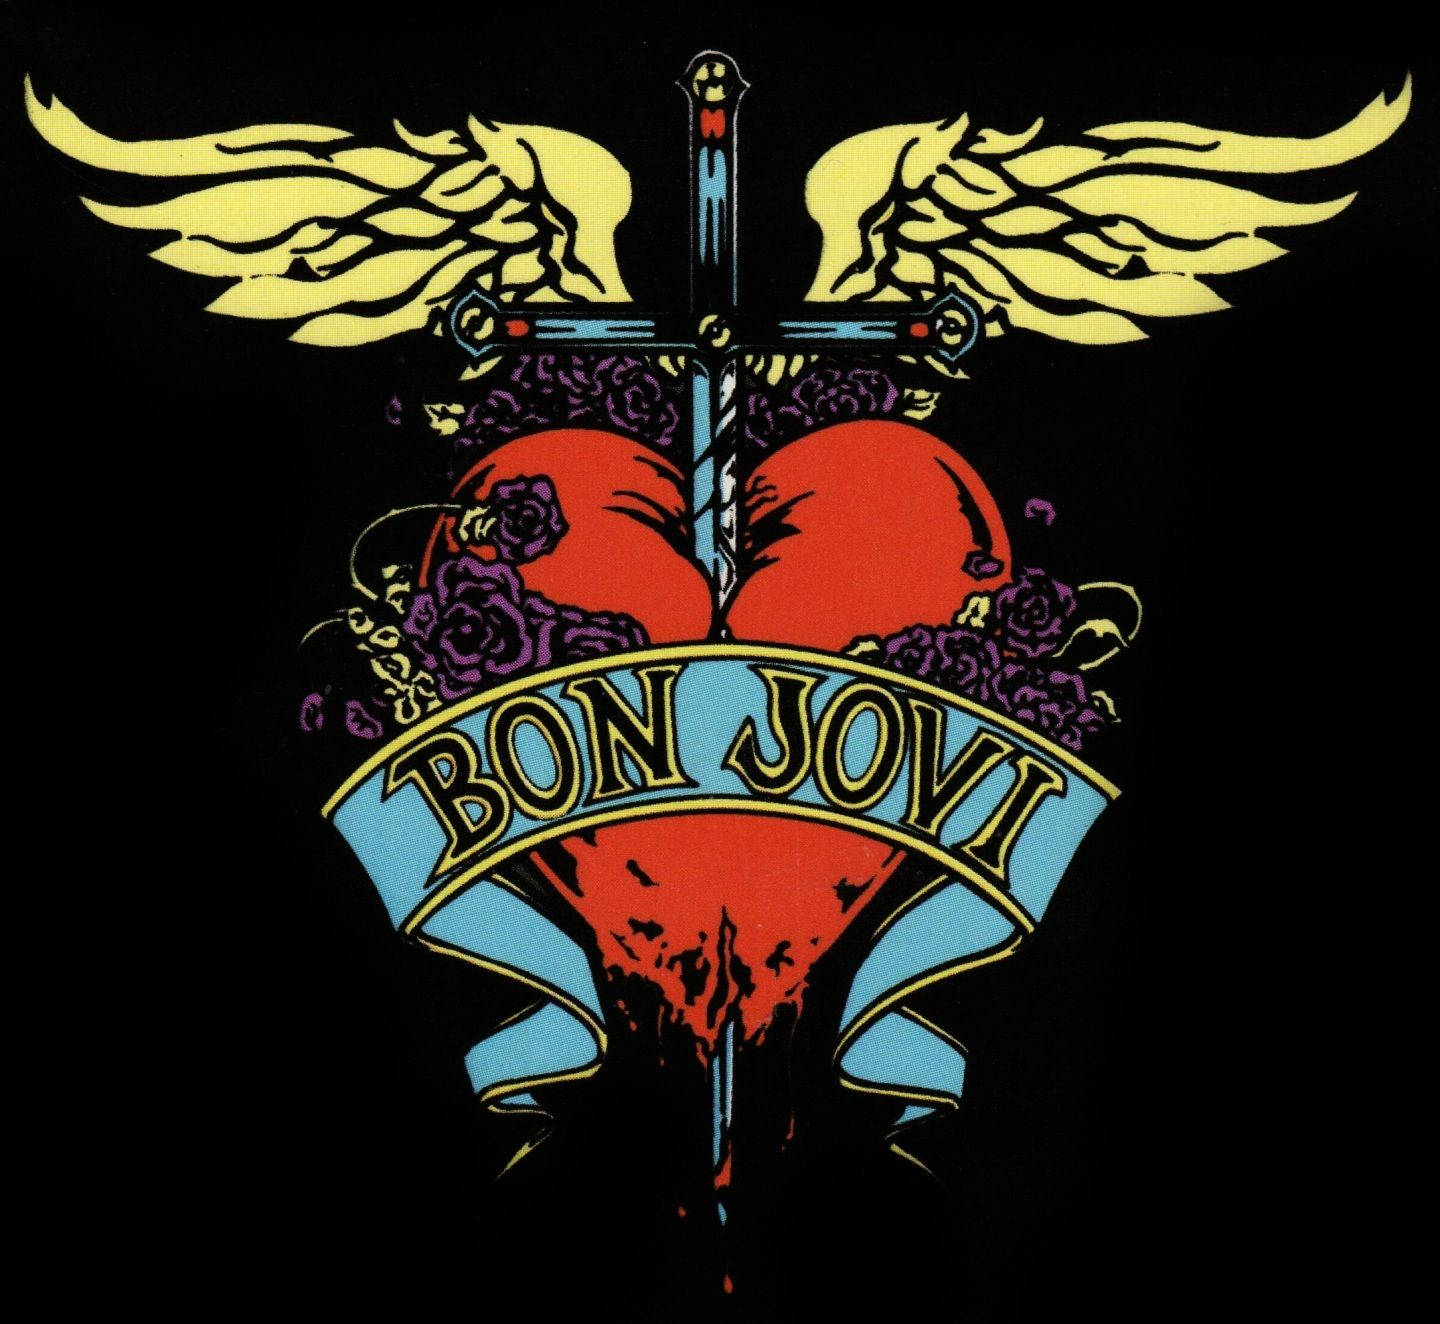 Download American Rock Band Bon Jovi Official Logo Wallpaper | Wallpapers .com